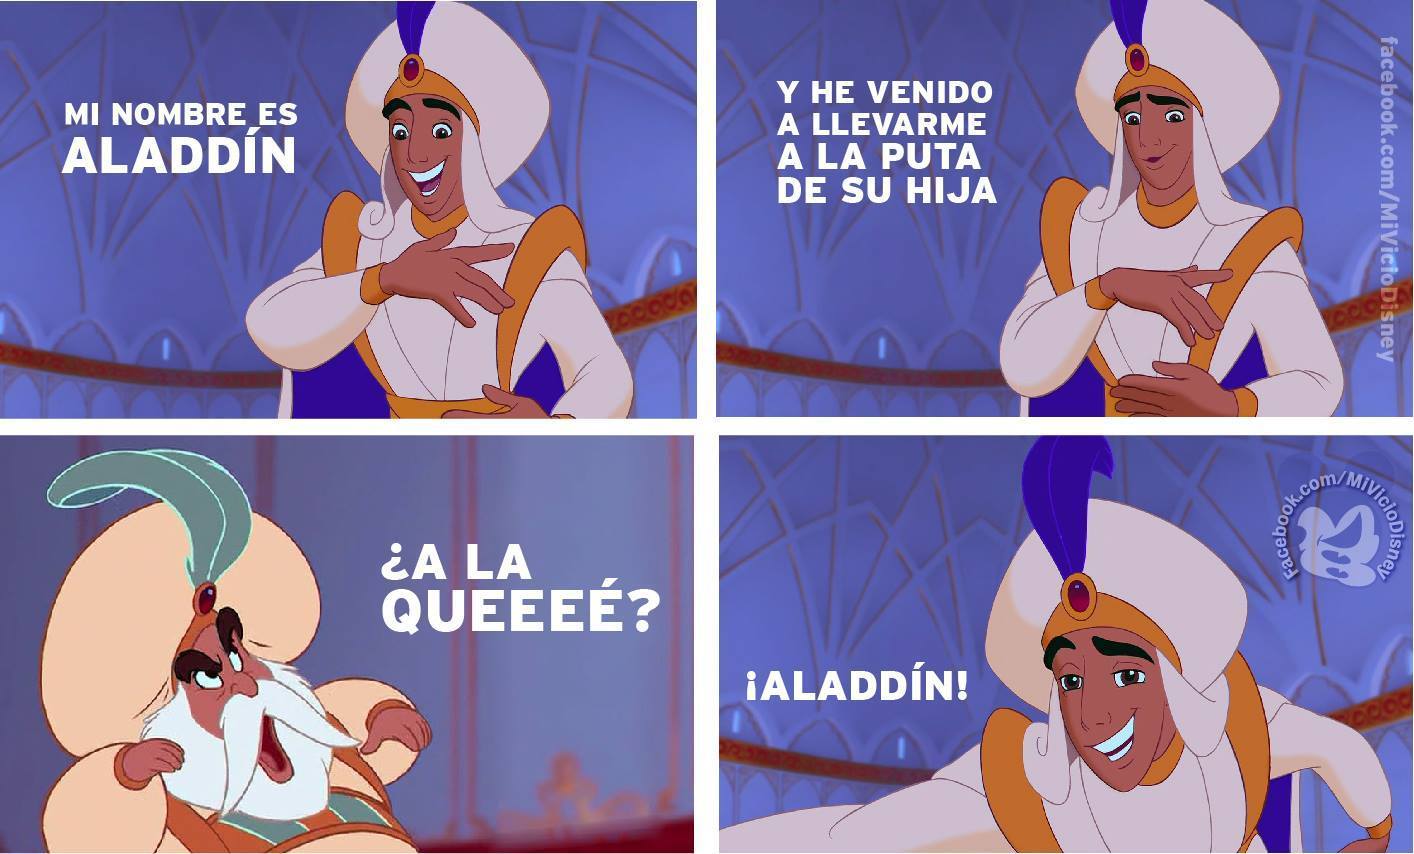 La historia no conocida de Aladdin jajaja - meme